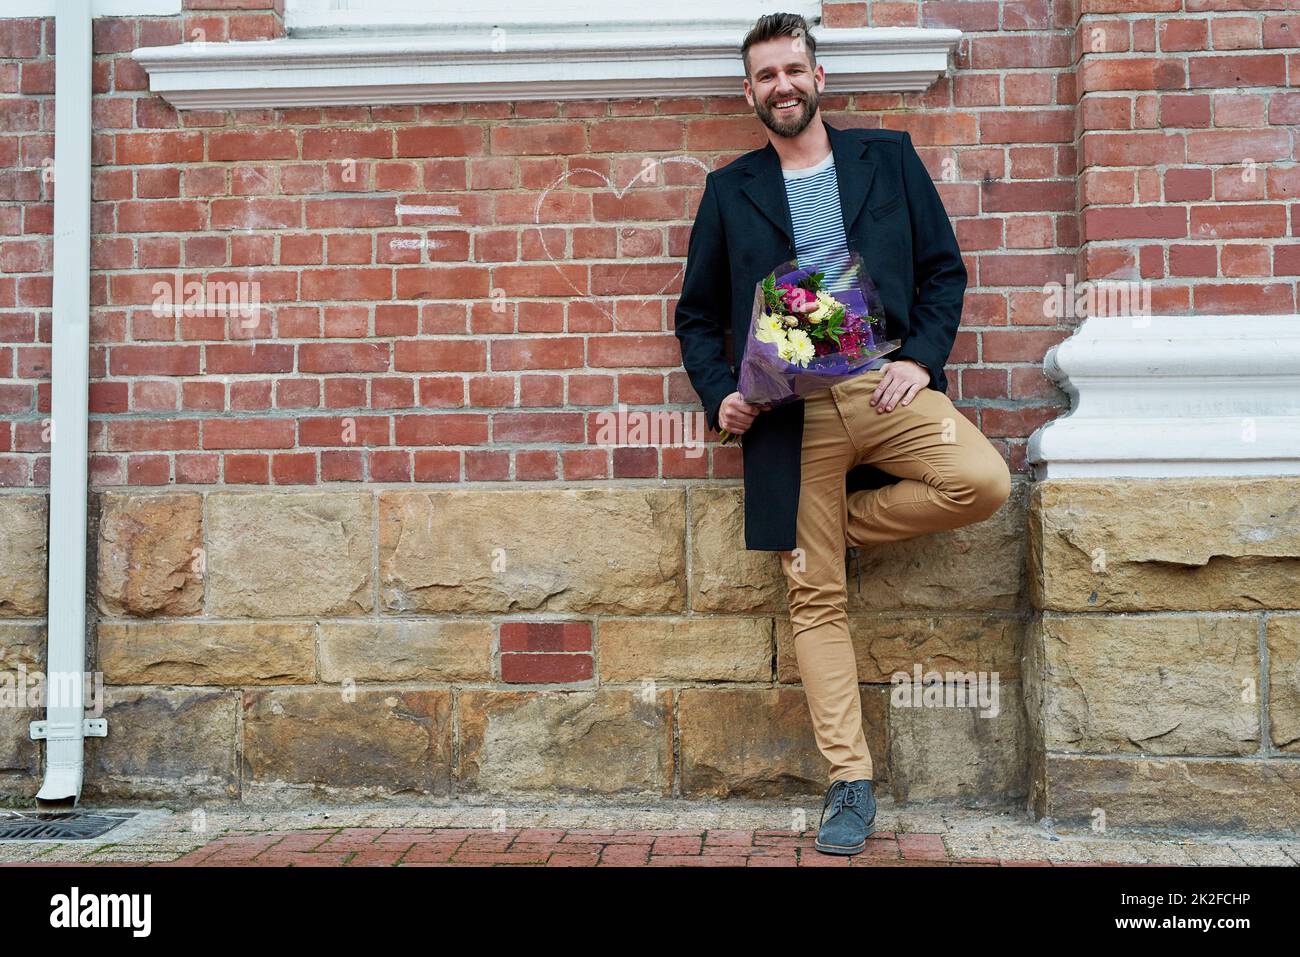 C'est pour l'amour de ma vie. Portrait d'un beau jeune homme debout contre un mur de briques avec un bouquet de fleurs à la main. Banque D'Images